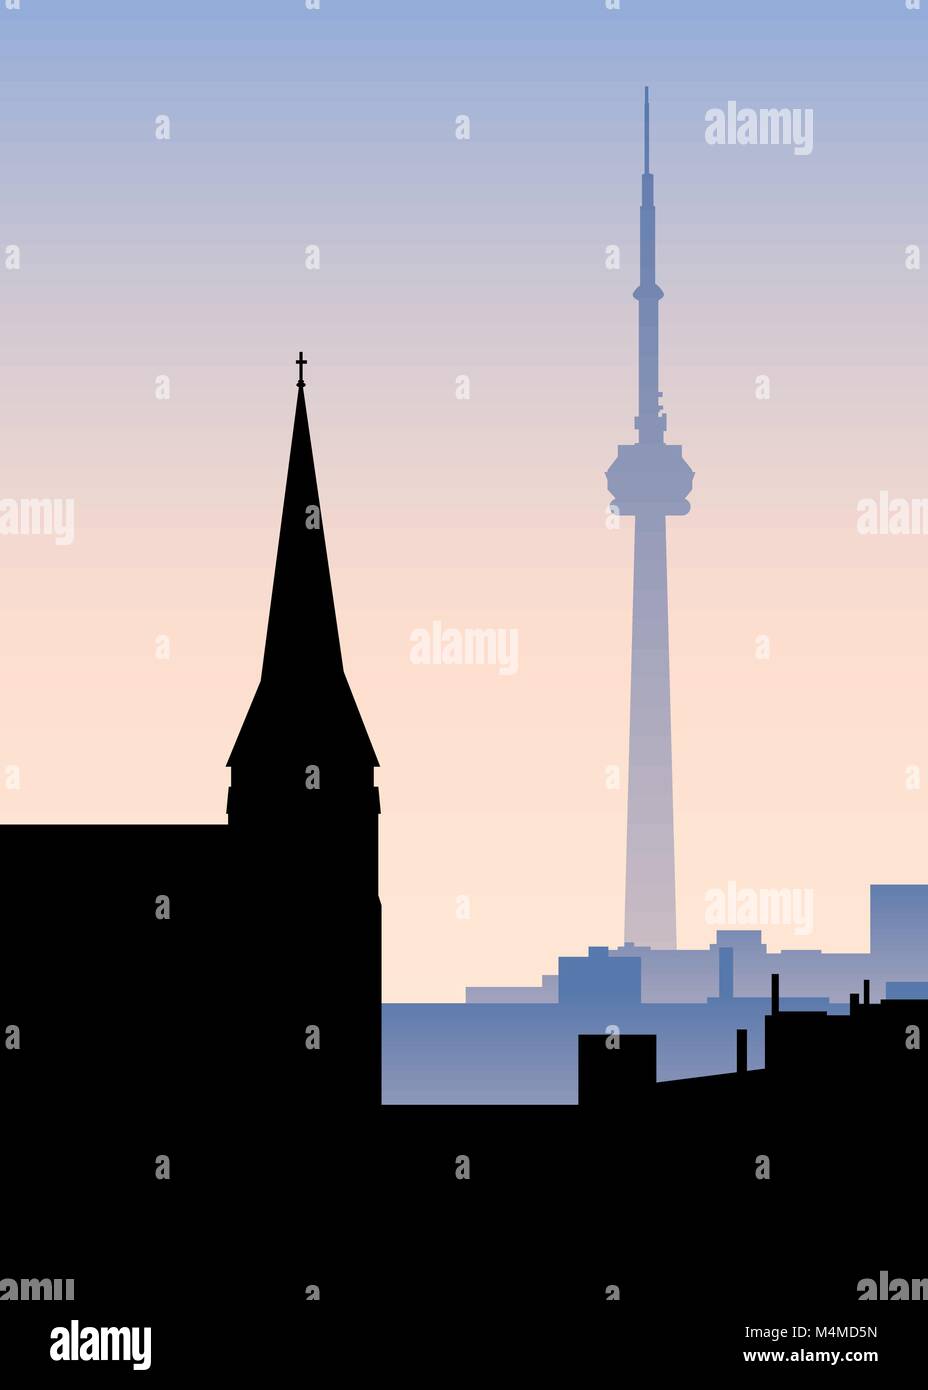 Skyline silueta de antiguas y modernas torres en Toronto, Ontario, Canadá. Ilustración del Vector